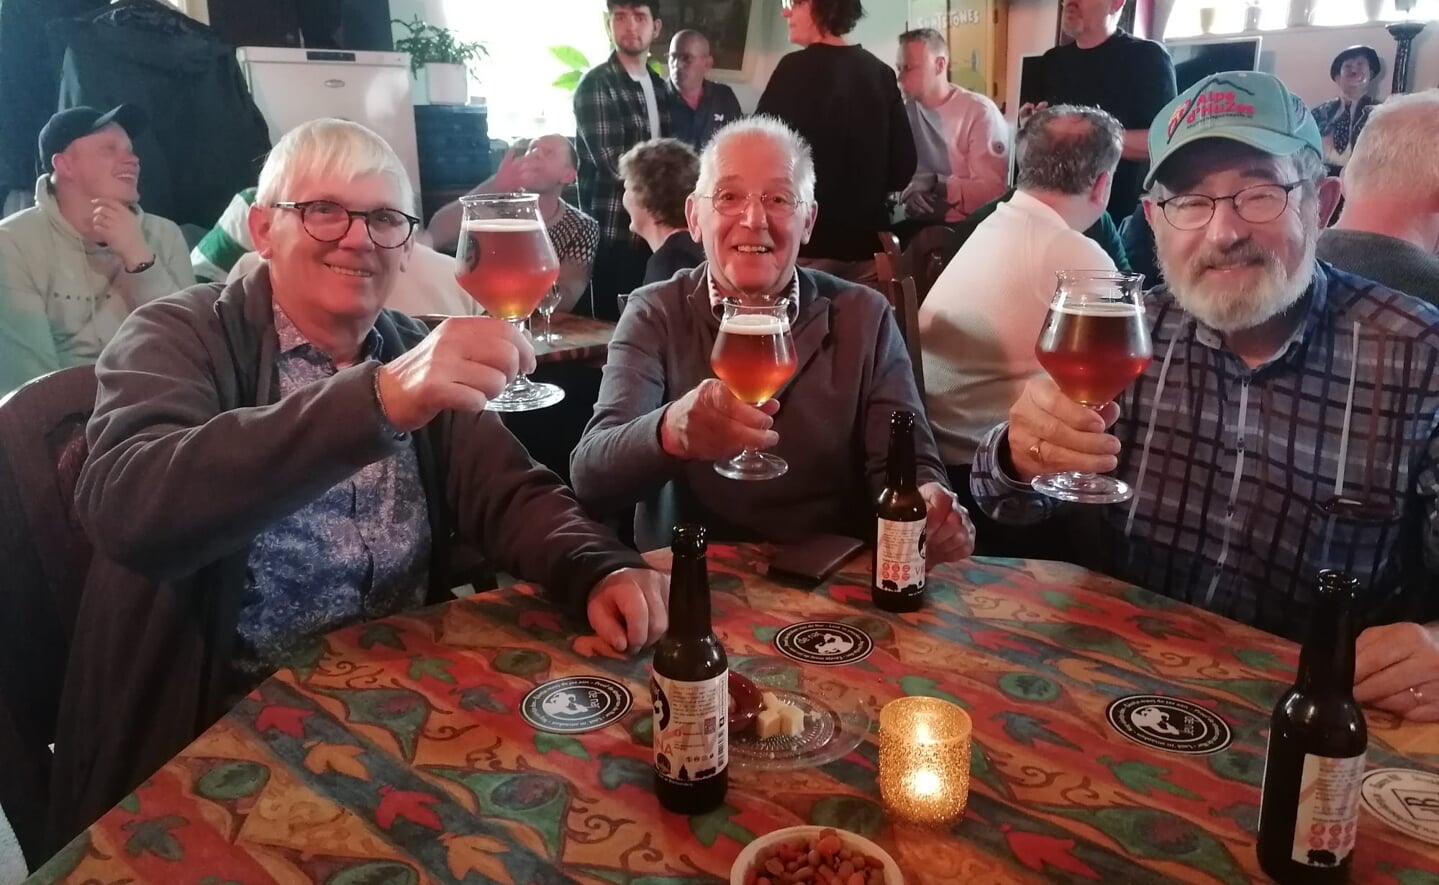 Bier proeven en tegelijkertijd het goede doel steunen. Zo'n 55 deelnemers deden het tweede paasdag in Esch. Ze kregen verschillende brouwsels voorgeschoteld en brachten zodoende geld bij elkaar voor het team Alpe du Esch dat in juni meedoet aan de Alpe d'HuZes.